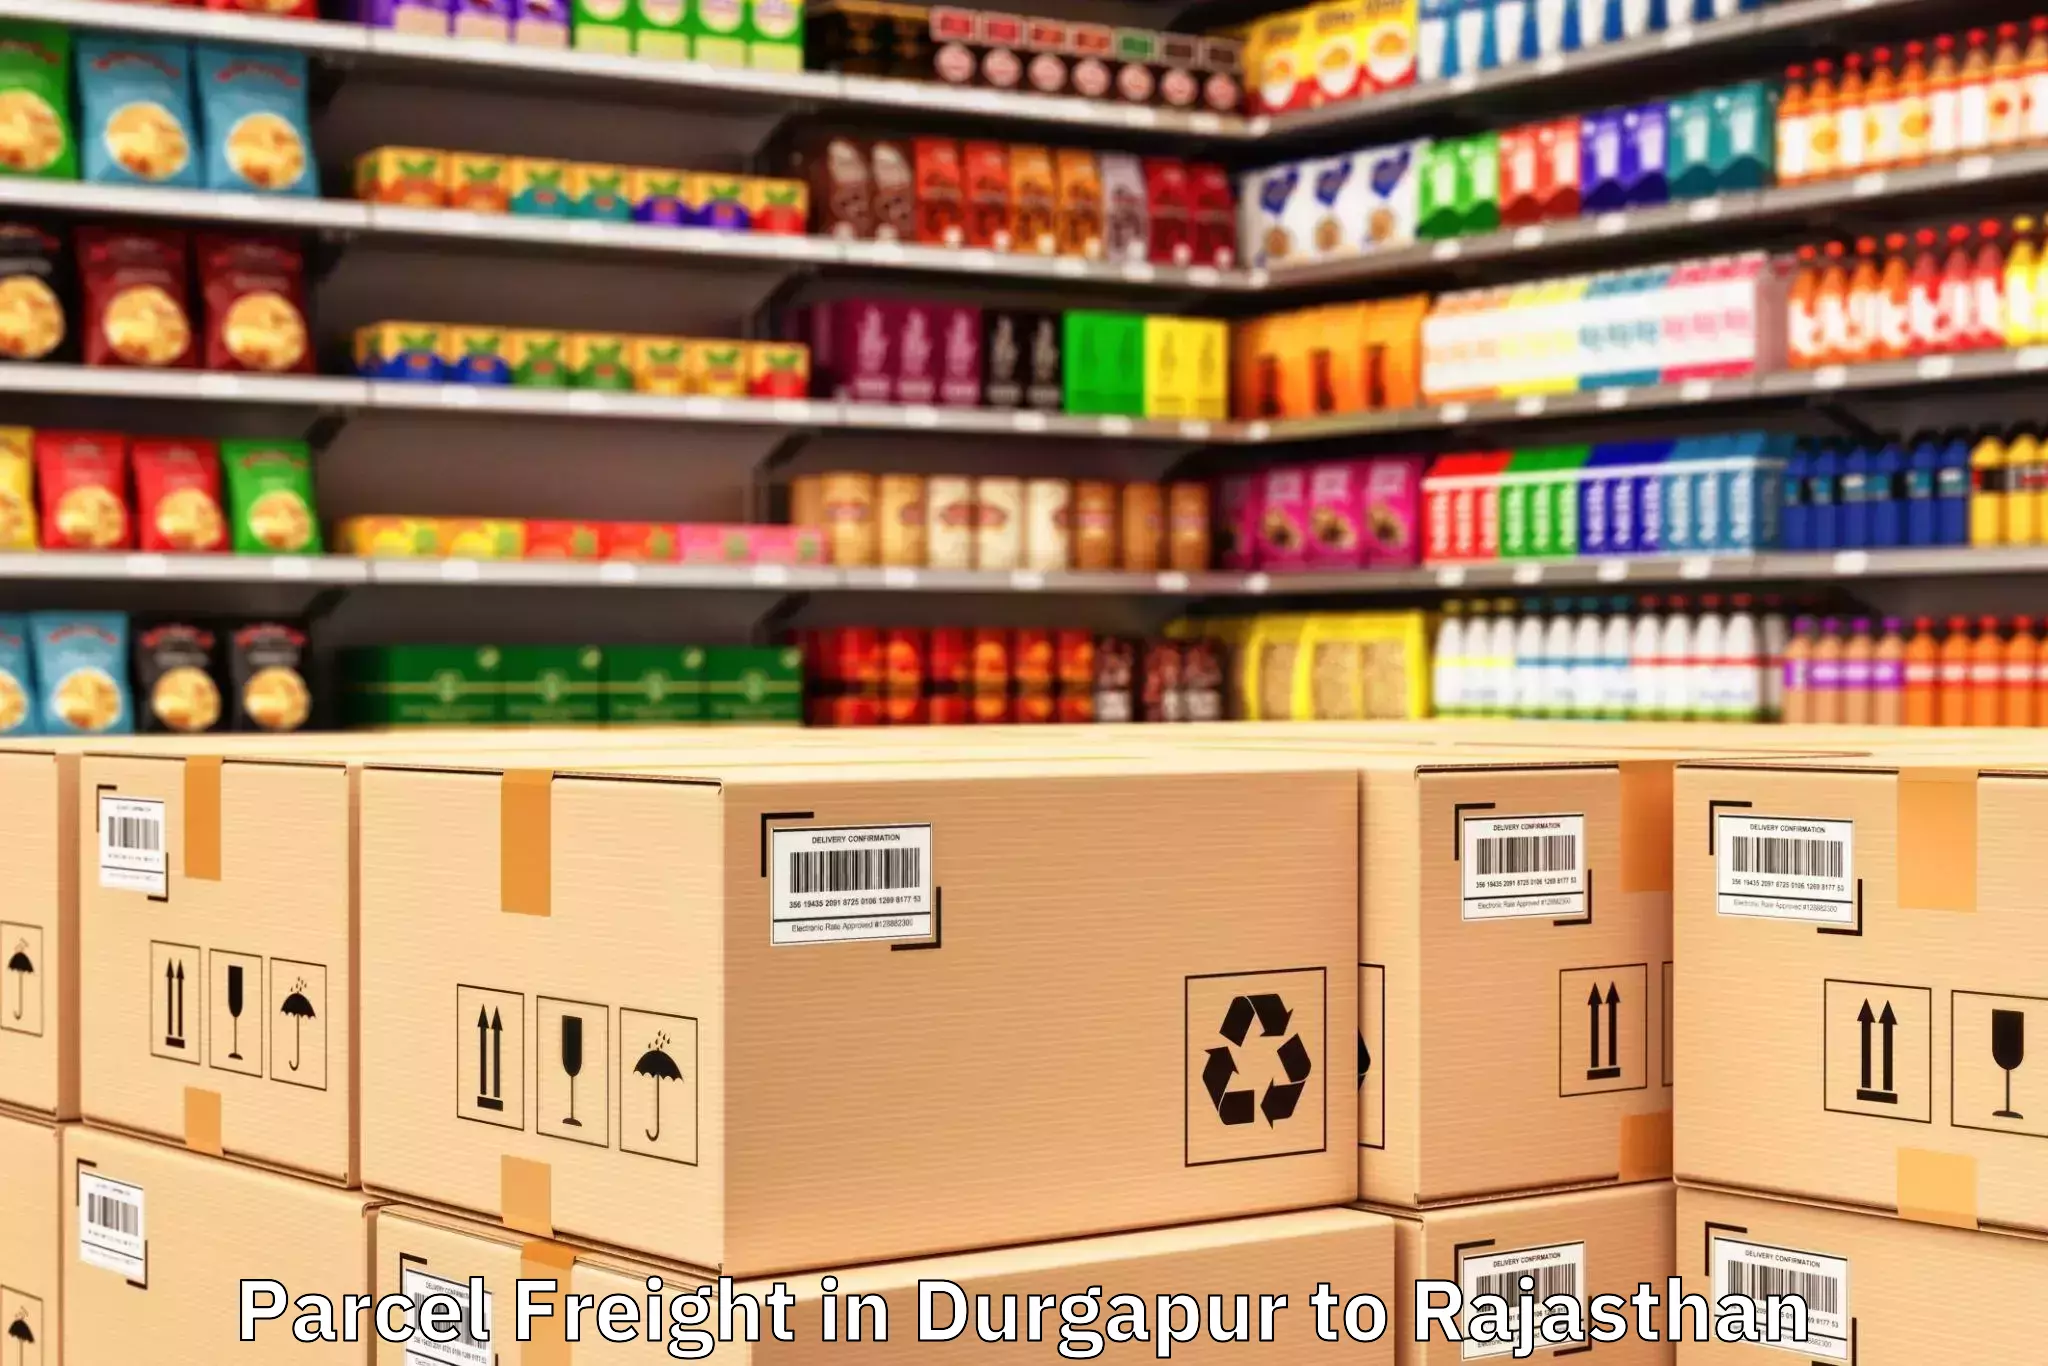 Book Durgapur to Pratapgarh Rajasthan Parcel Freight Online